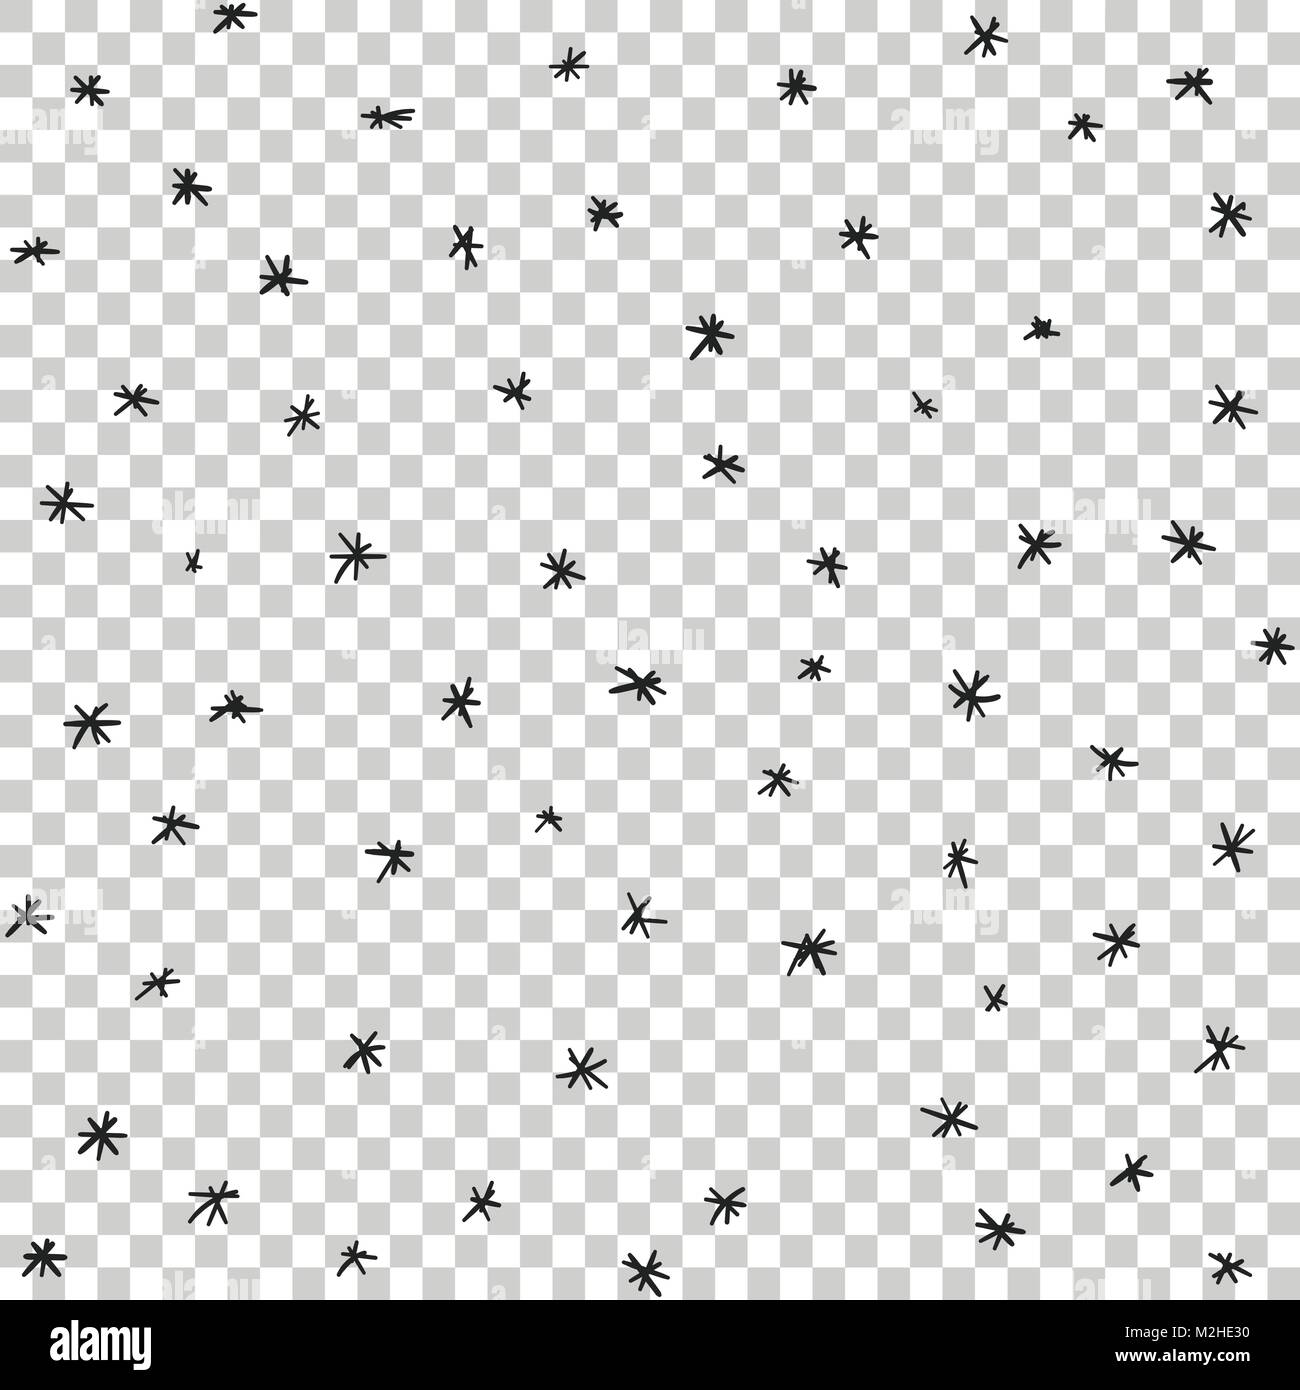 Vektor nahtlose Übergabe Sterne und Schnee Muster gezeichnet. Schneefall Vector Illustration. Stock Vektor